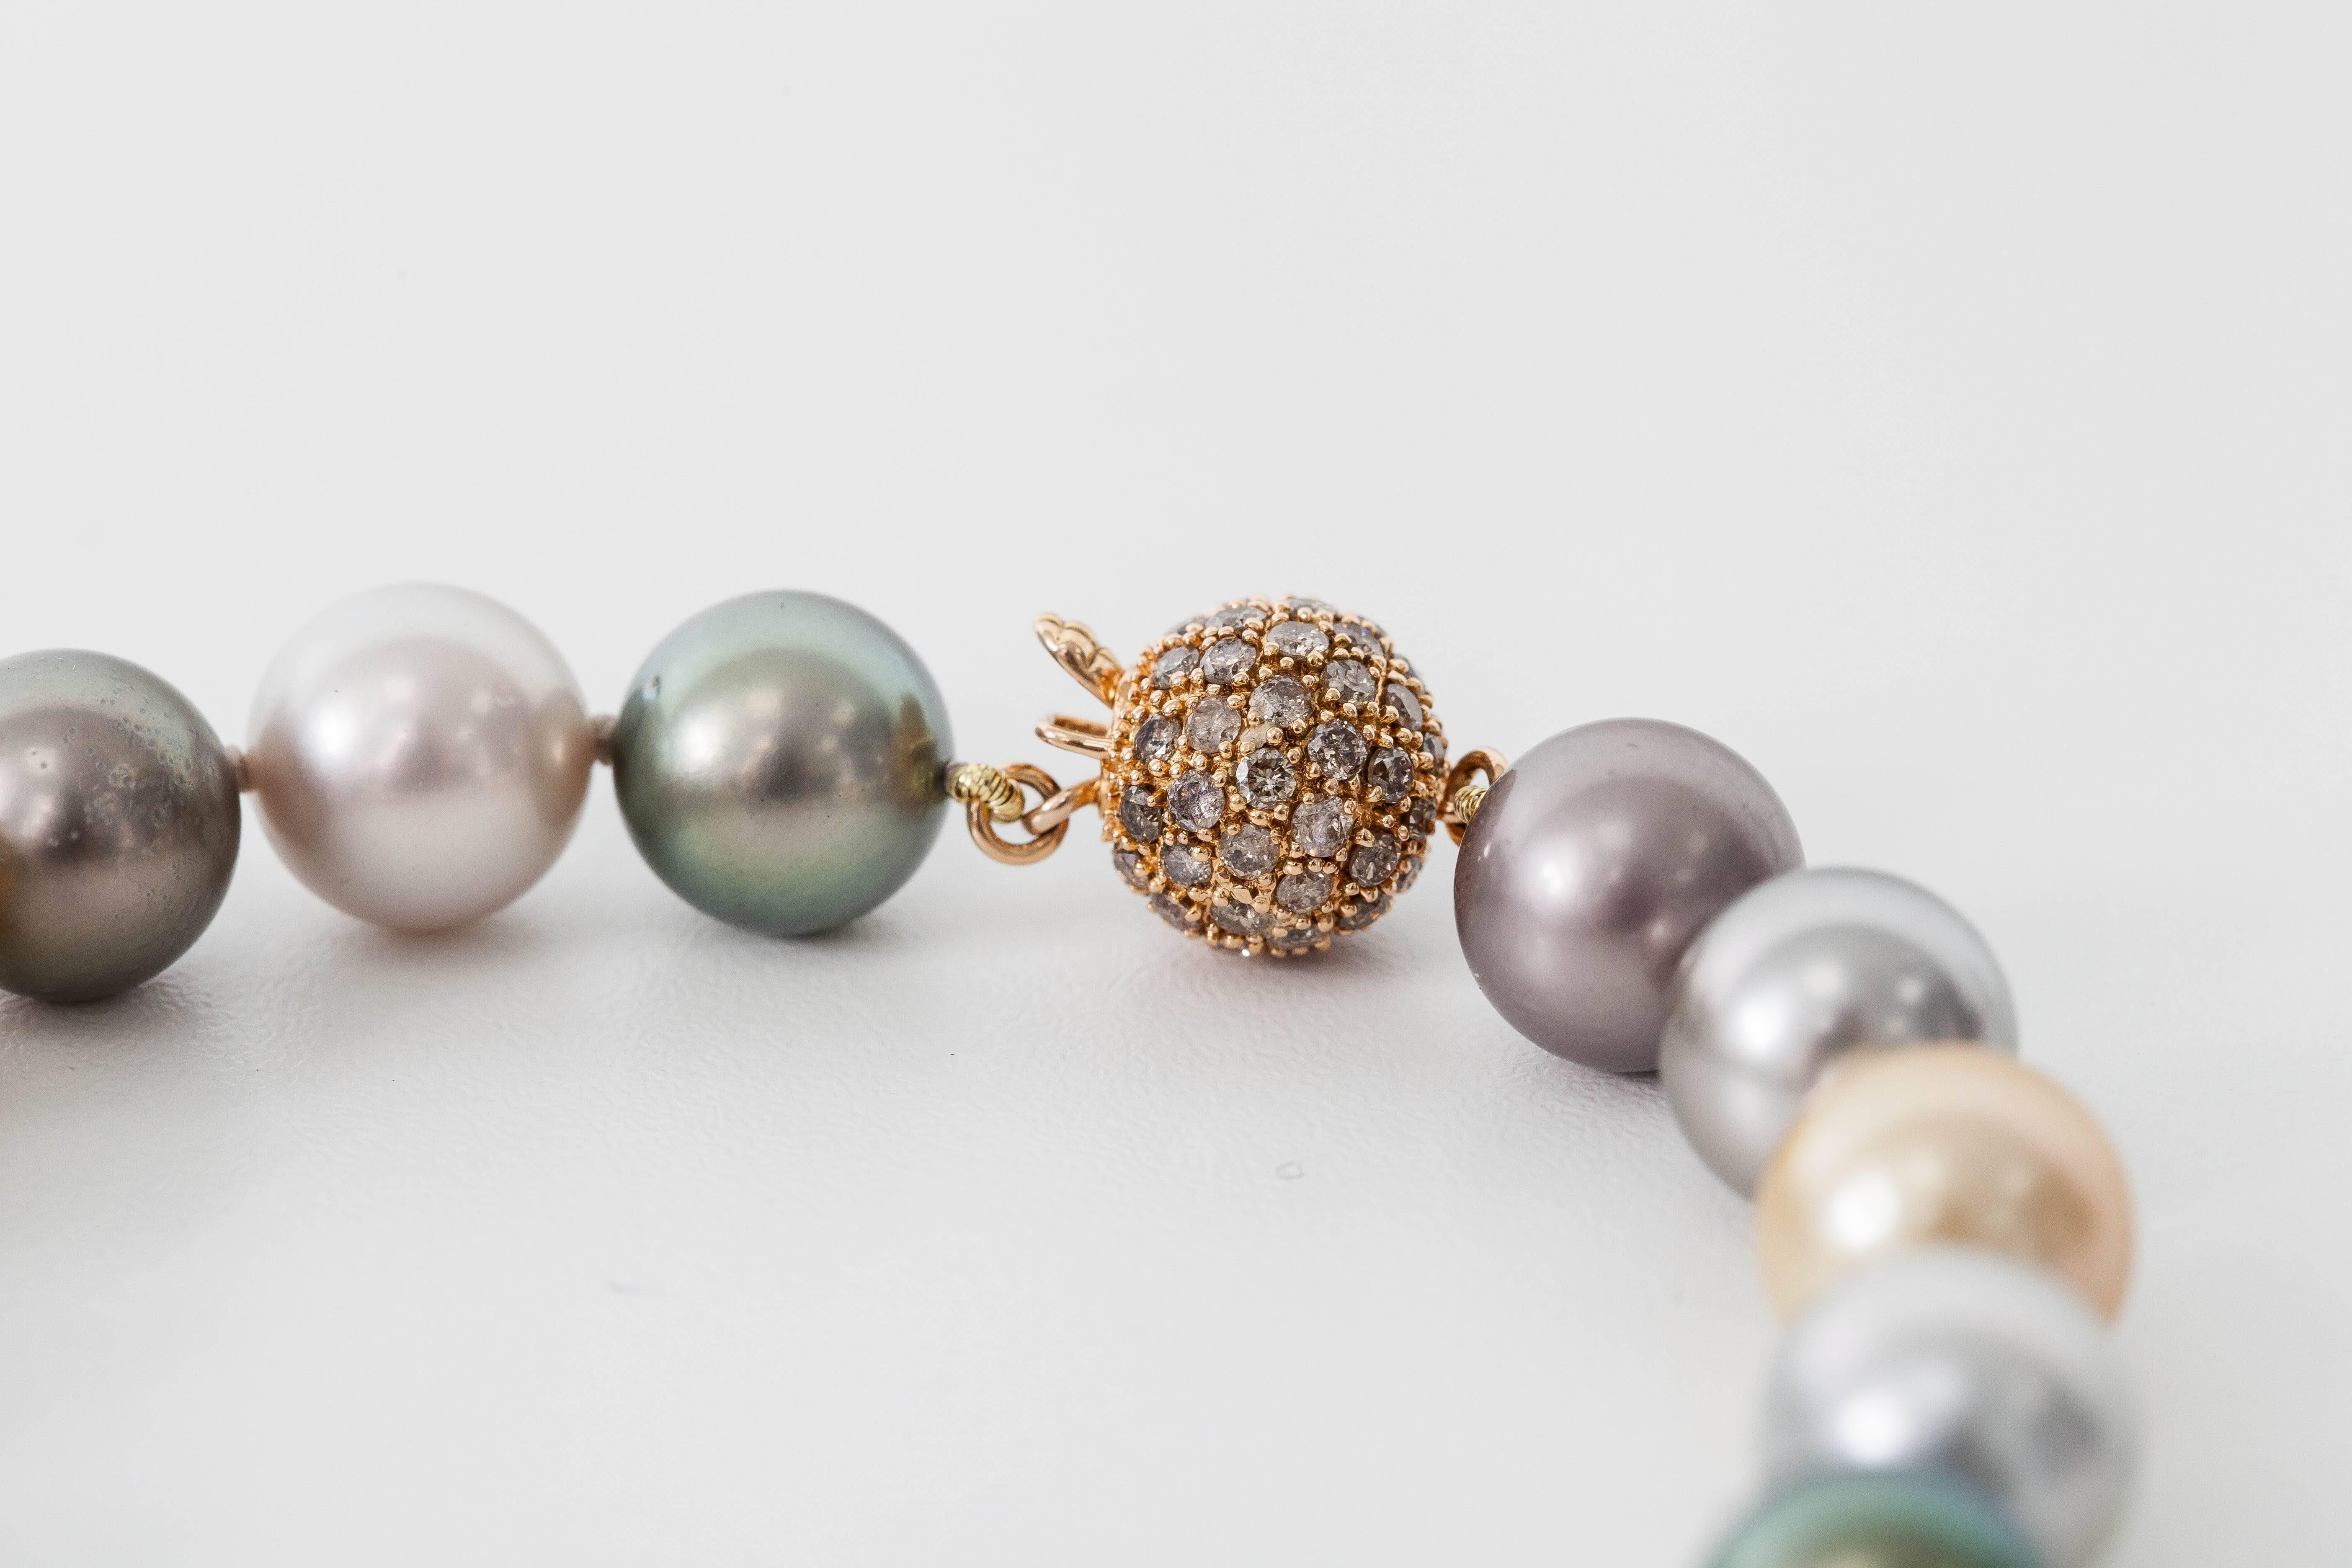 multi color south sea pearl necklace